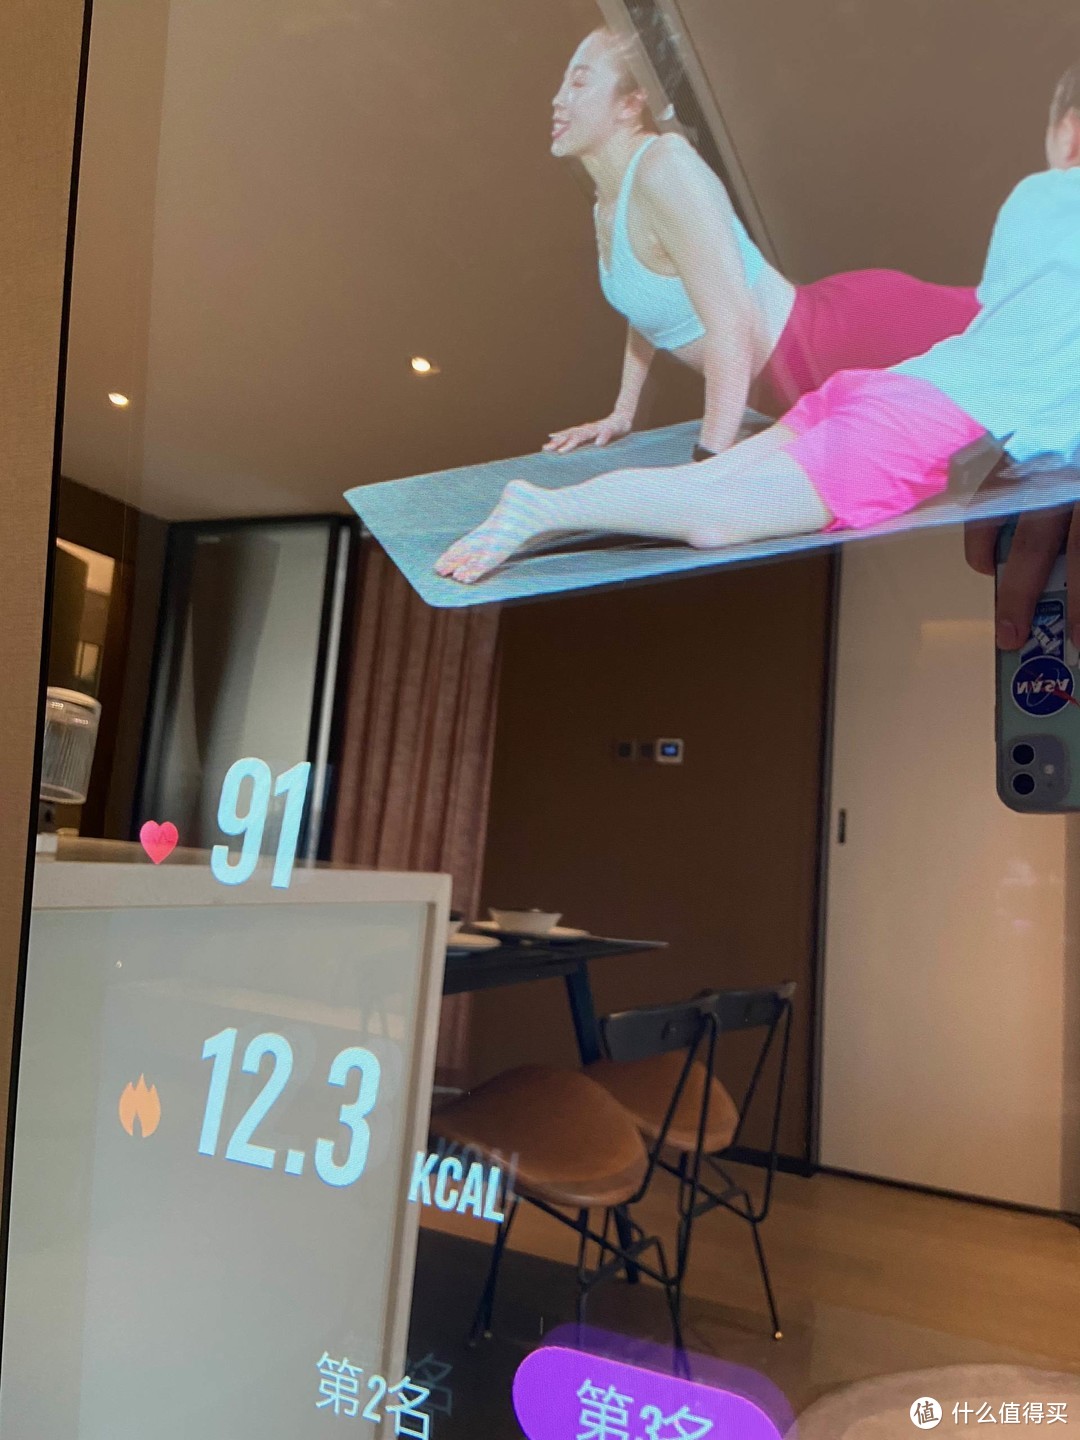 一平米的家庭智能健身房，FIT MORE智能健身镜评测使用评测